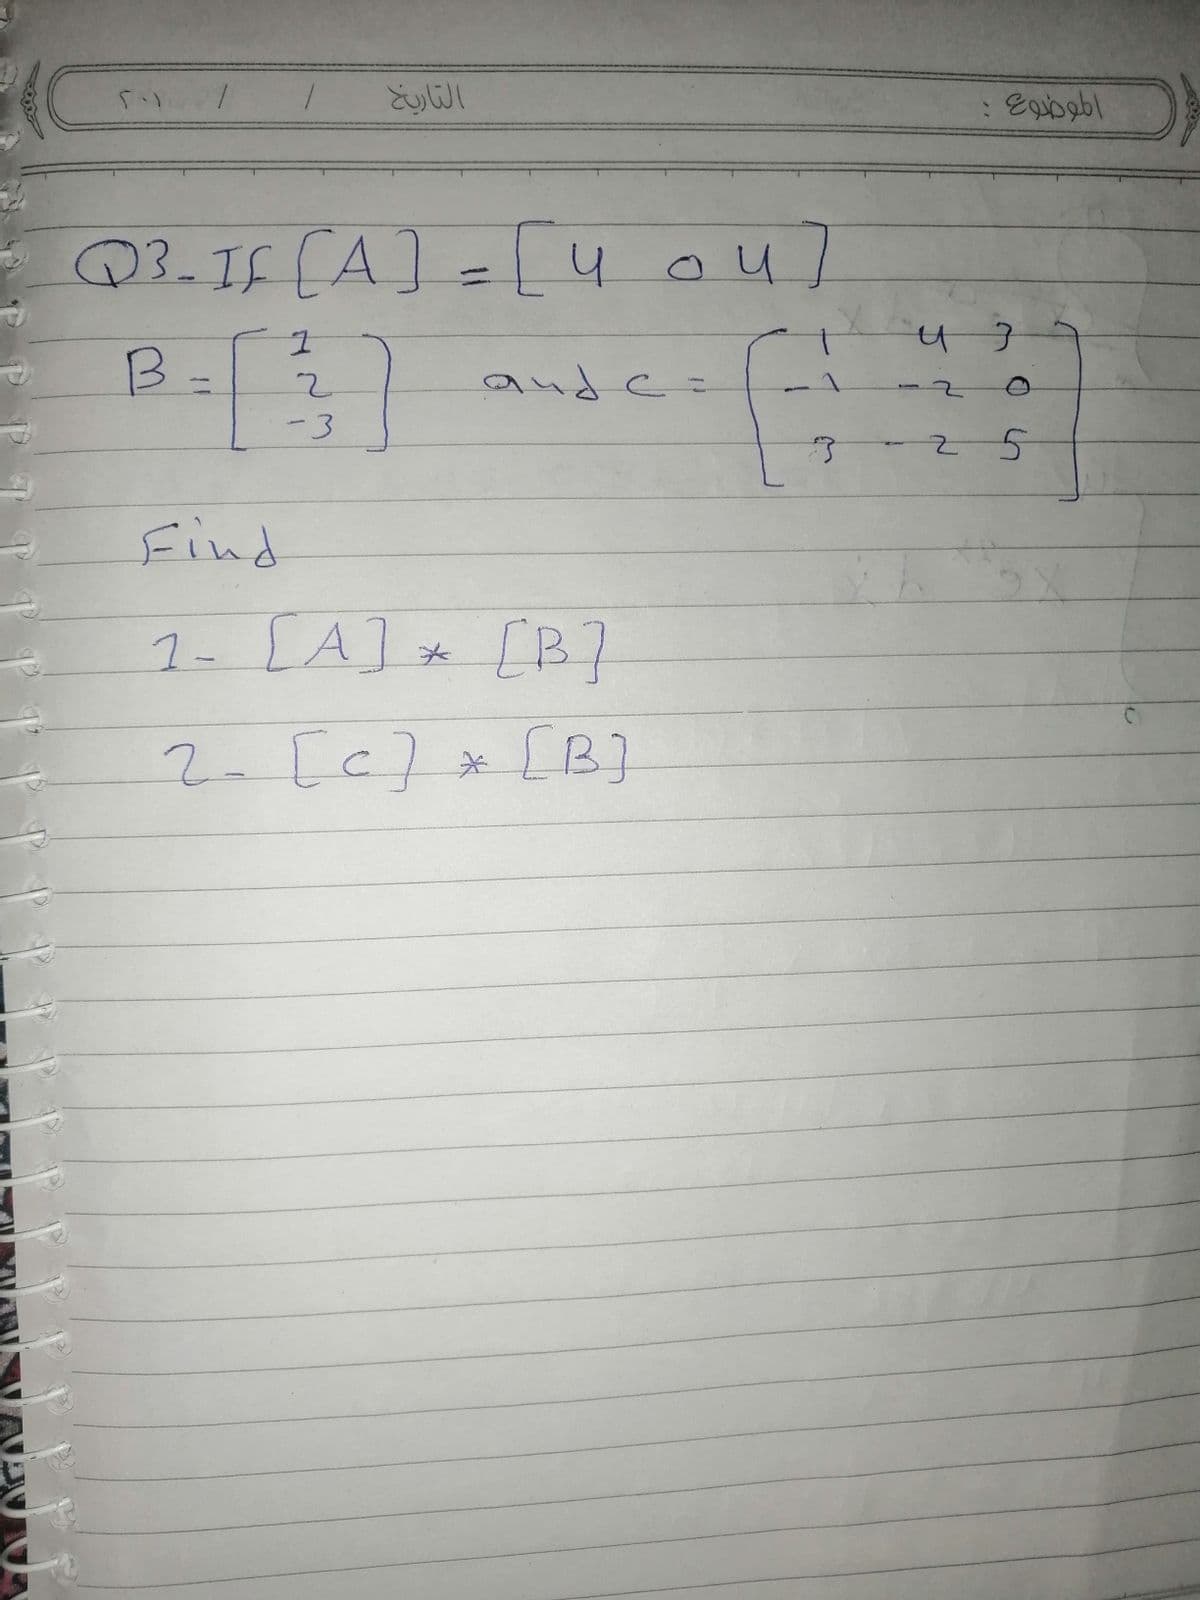 التاريخ
Q3-I5CA]=4
ou]
B-3)
and c=
%3D
5-
Find
1- [A] [B?
2-
[c]*[B]
